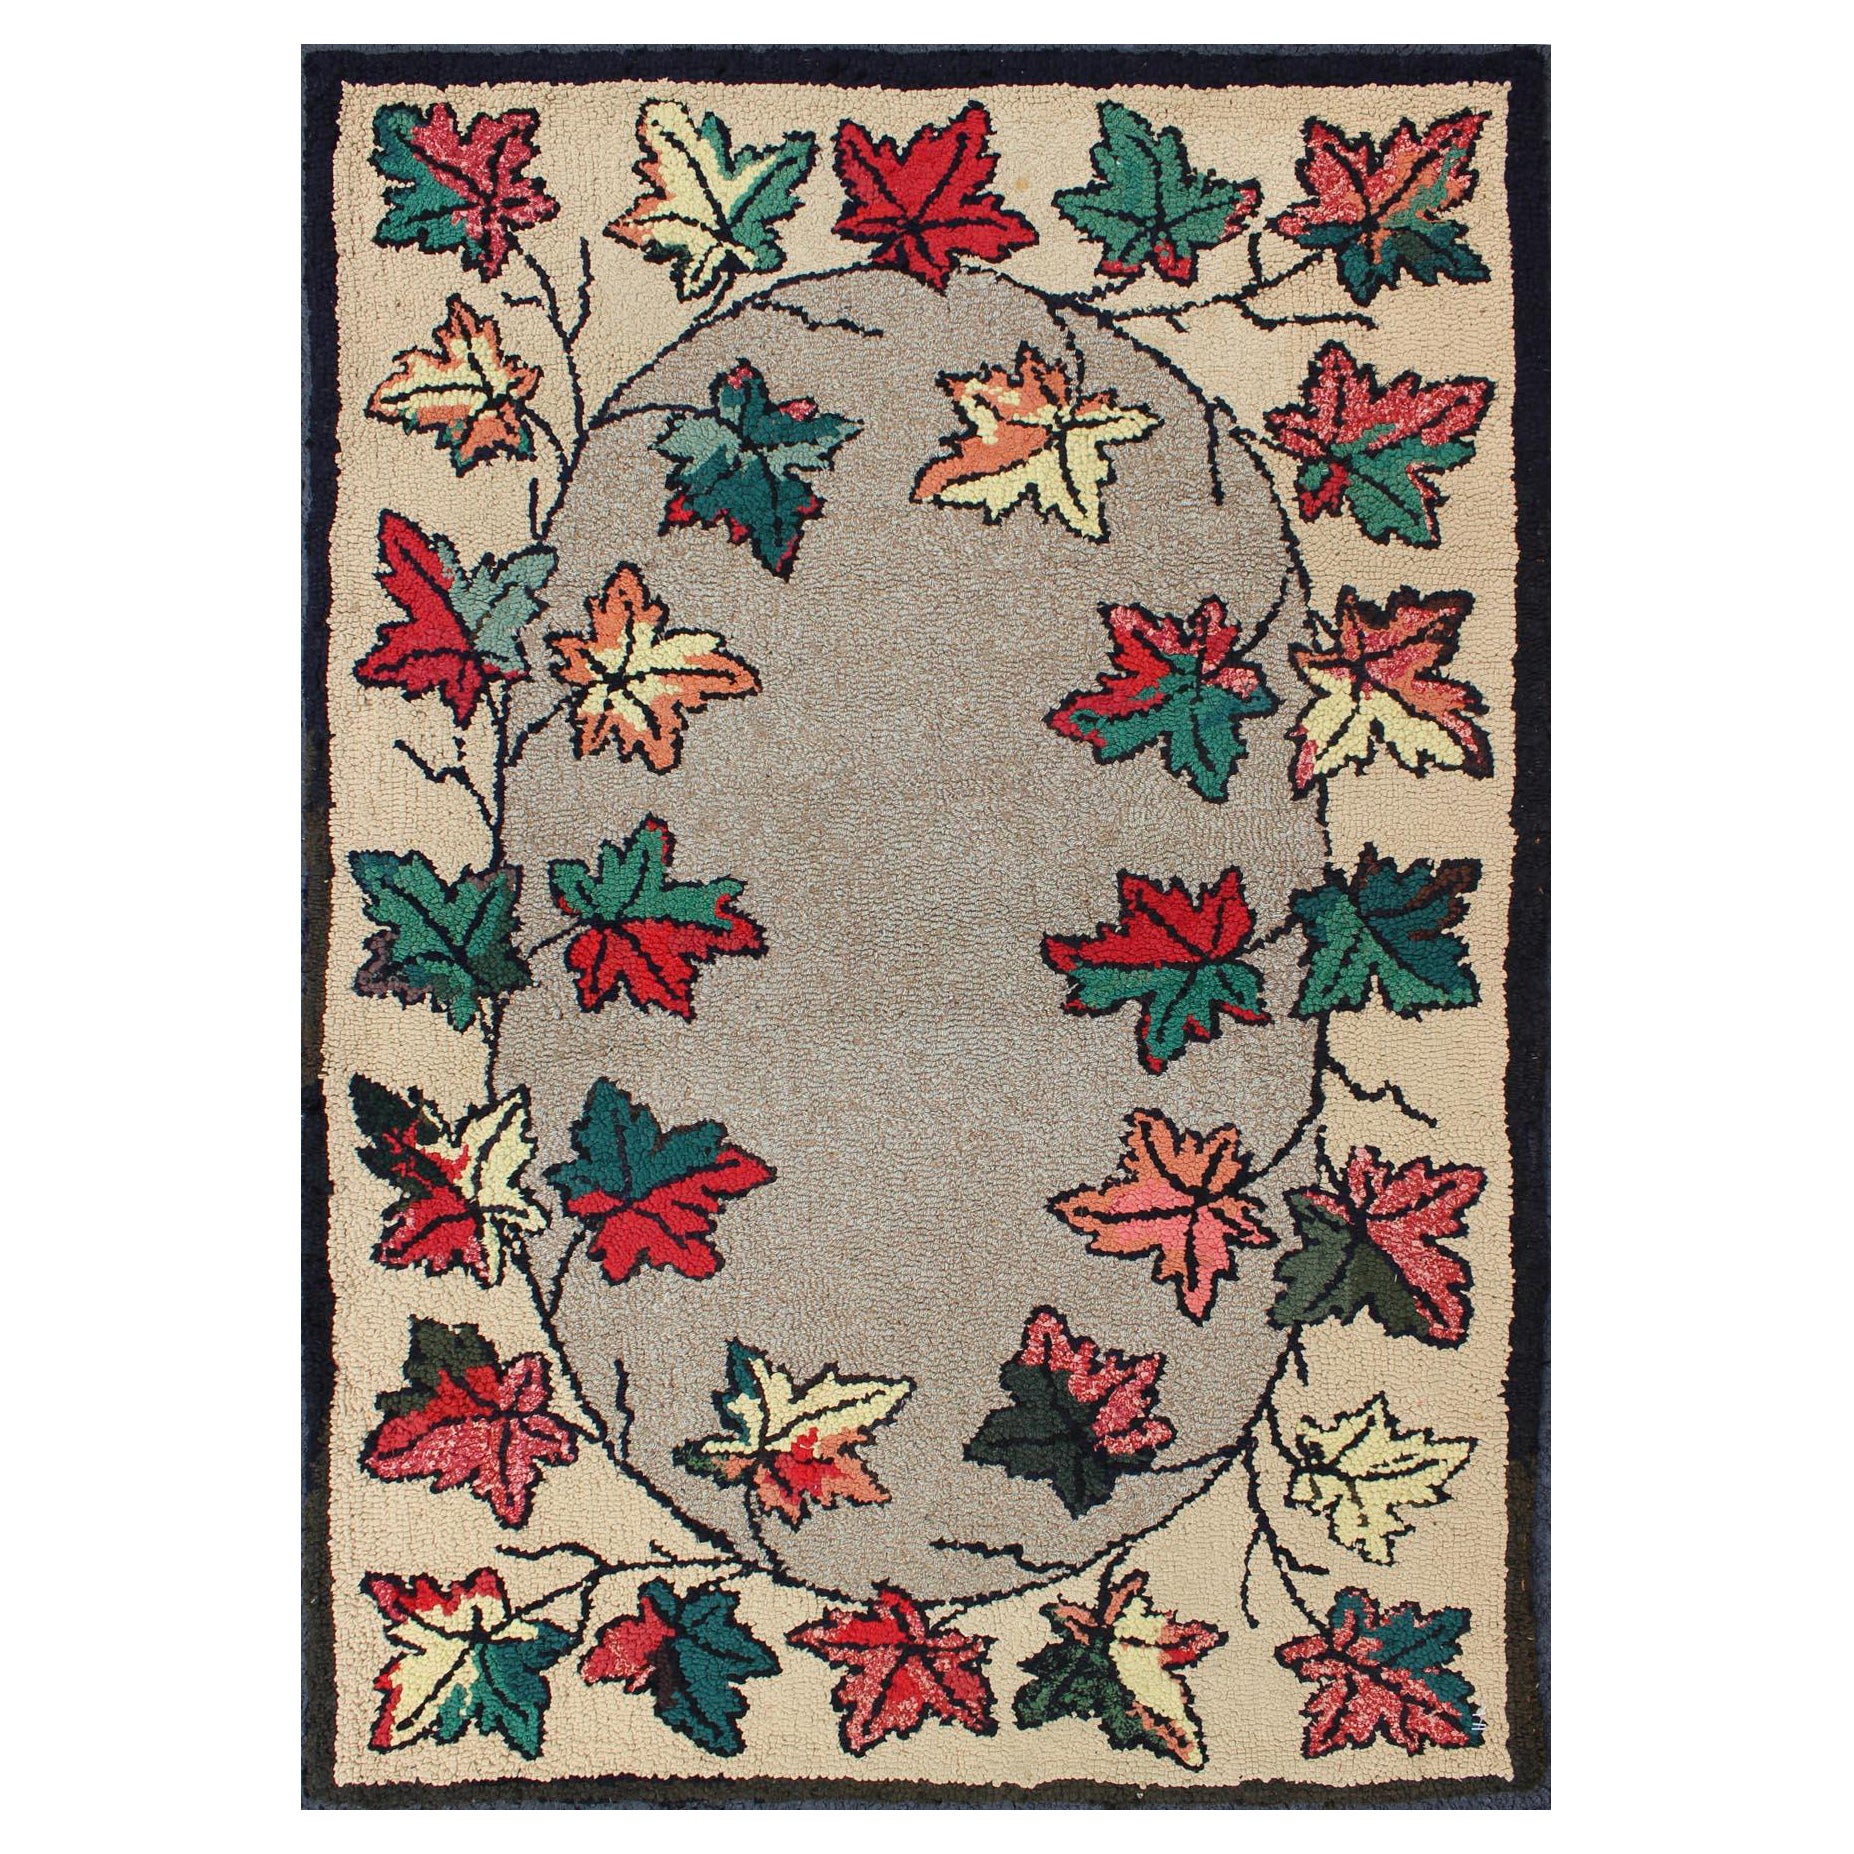 Amerikanischer Kapuzenteppich im Blattblattdesign mit roten, grünen und anthrazitfarbenen Konturen